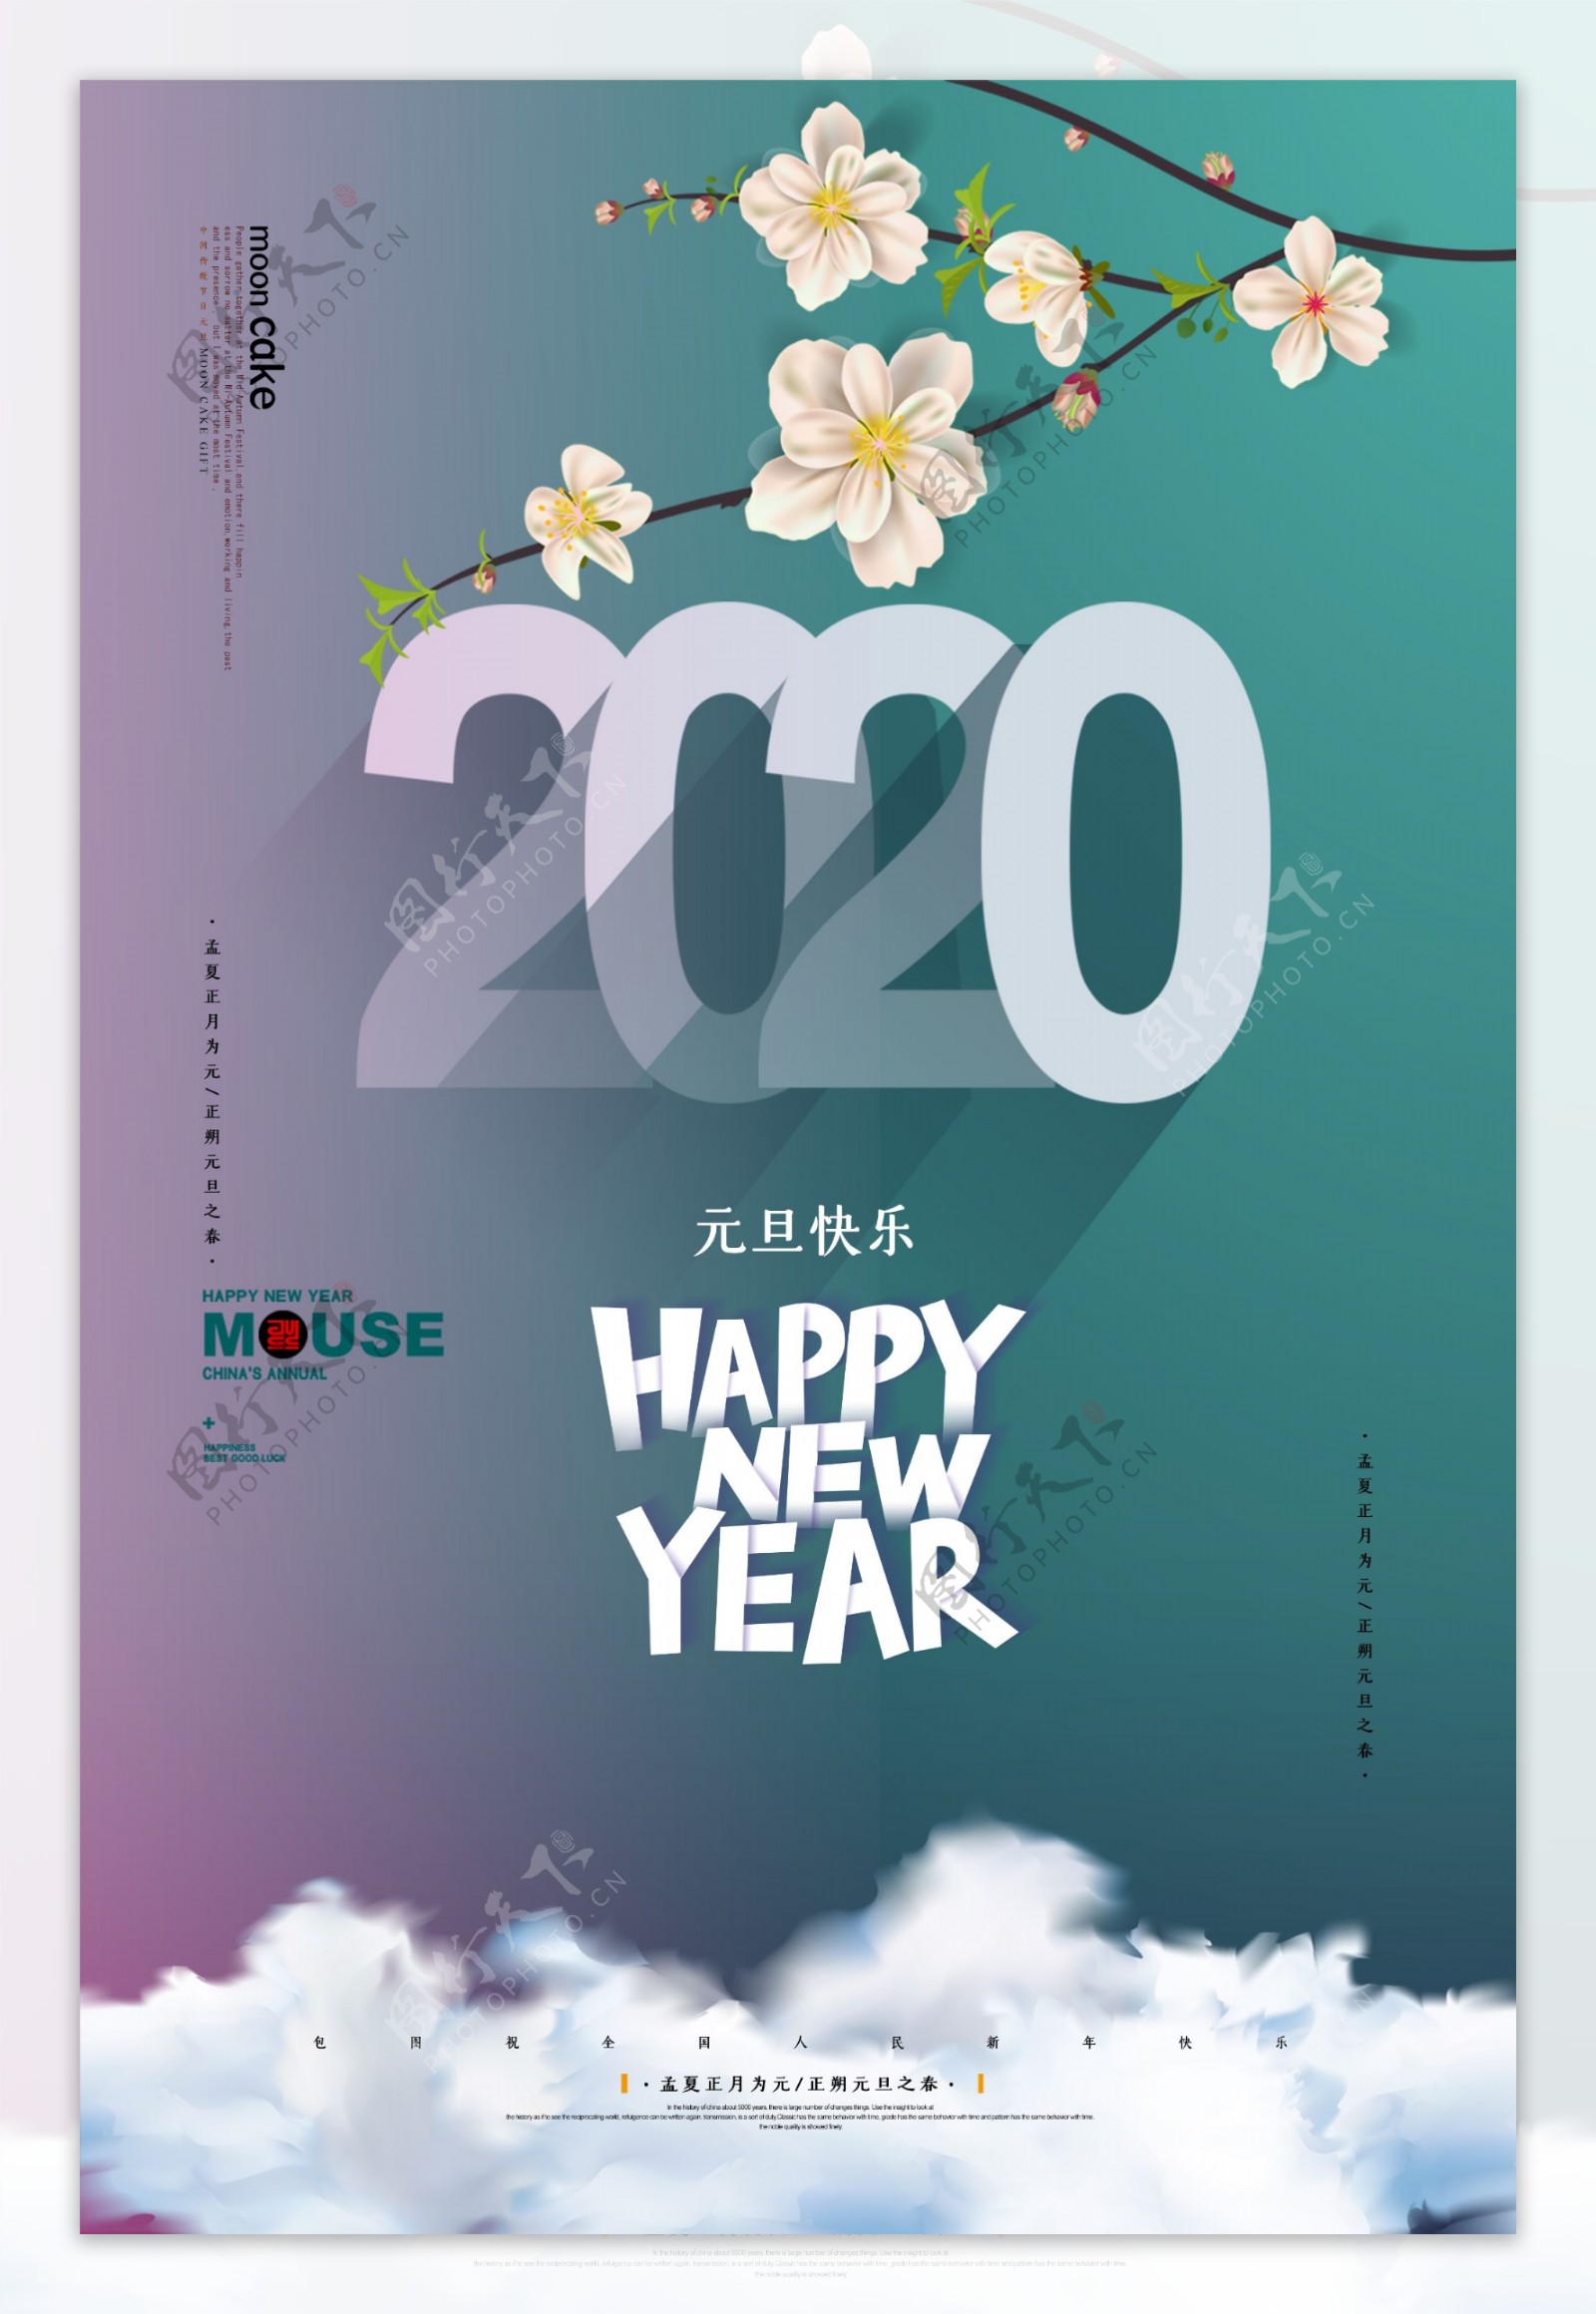 2020元旦节日快乐海报